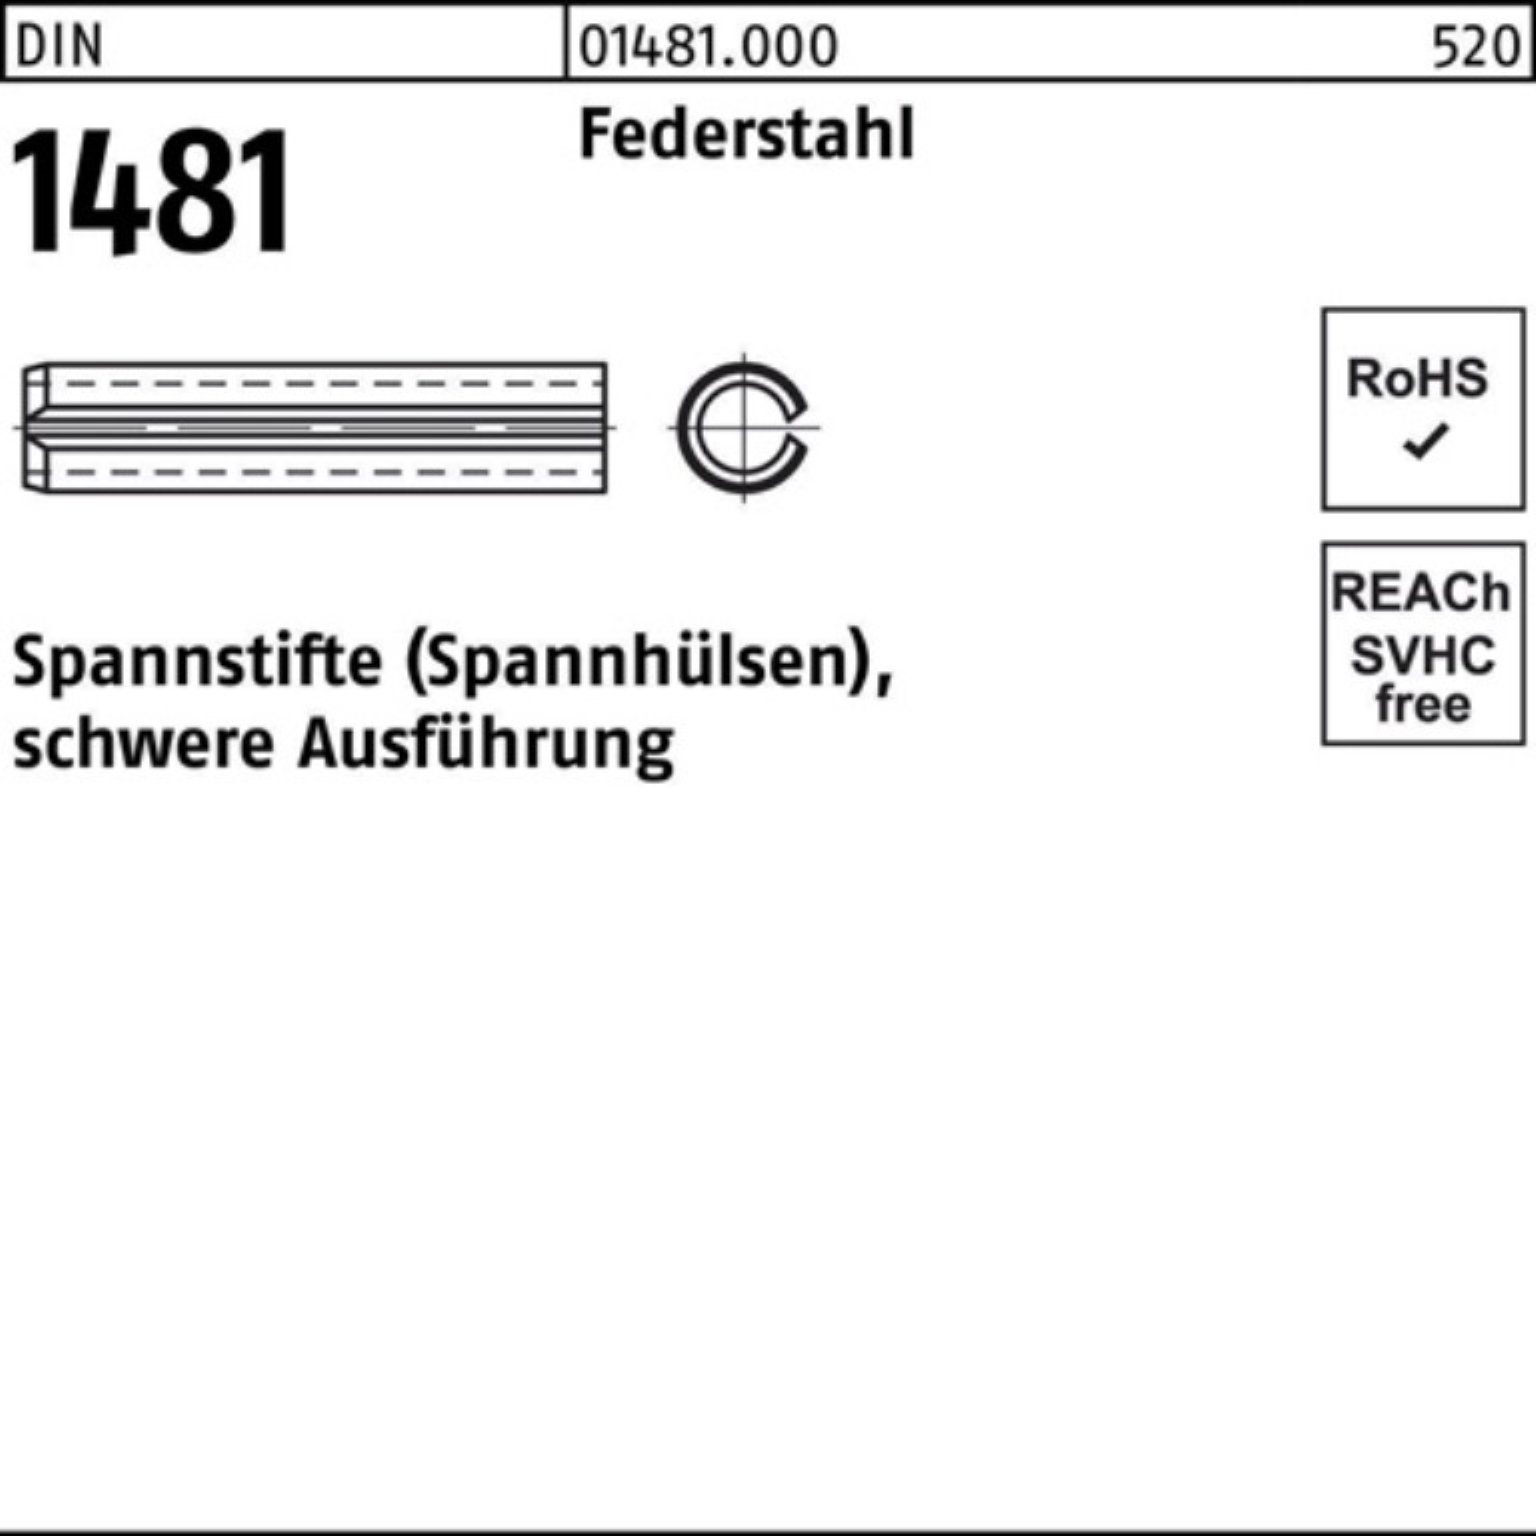 13x Federstahl 100er 24 DIN schwere Spannstift Ausführung Reyher Pack Spannstift 1481 2